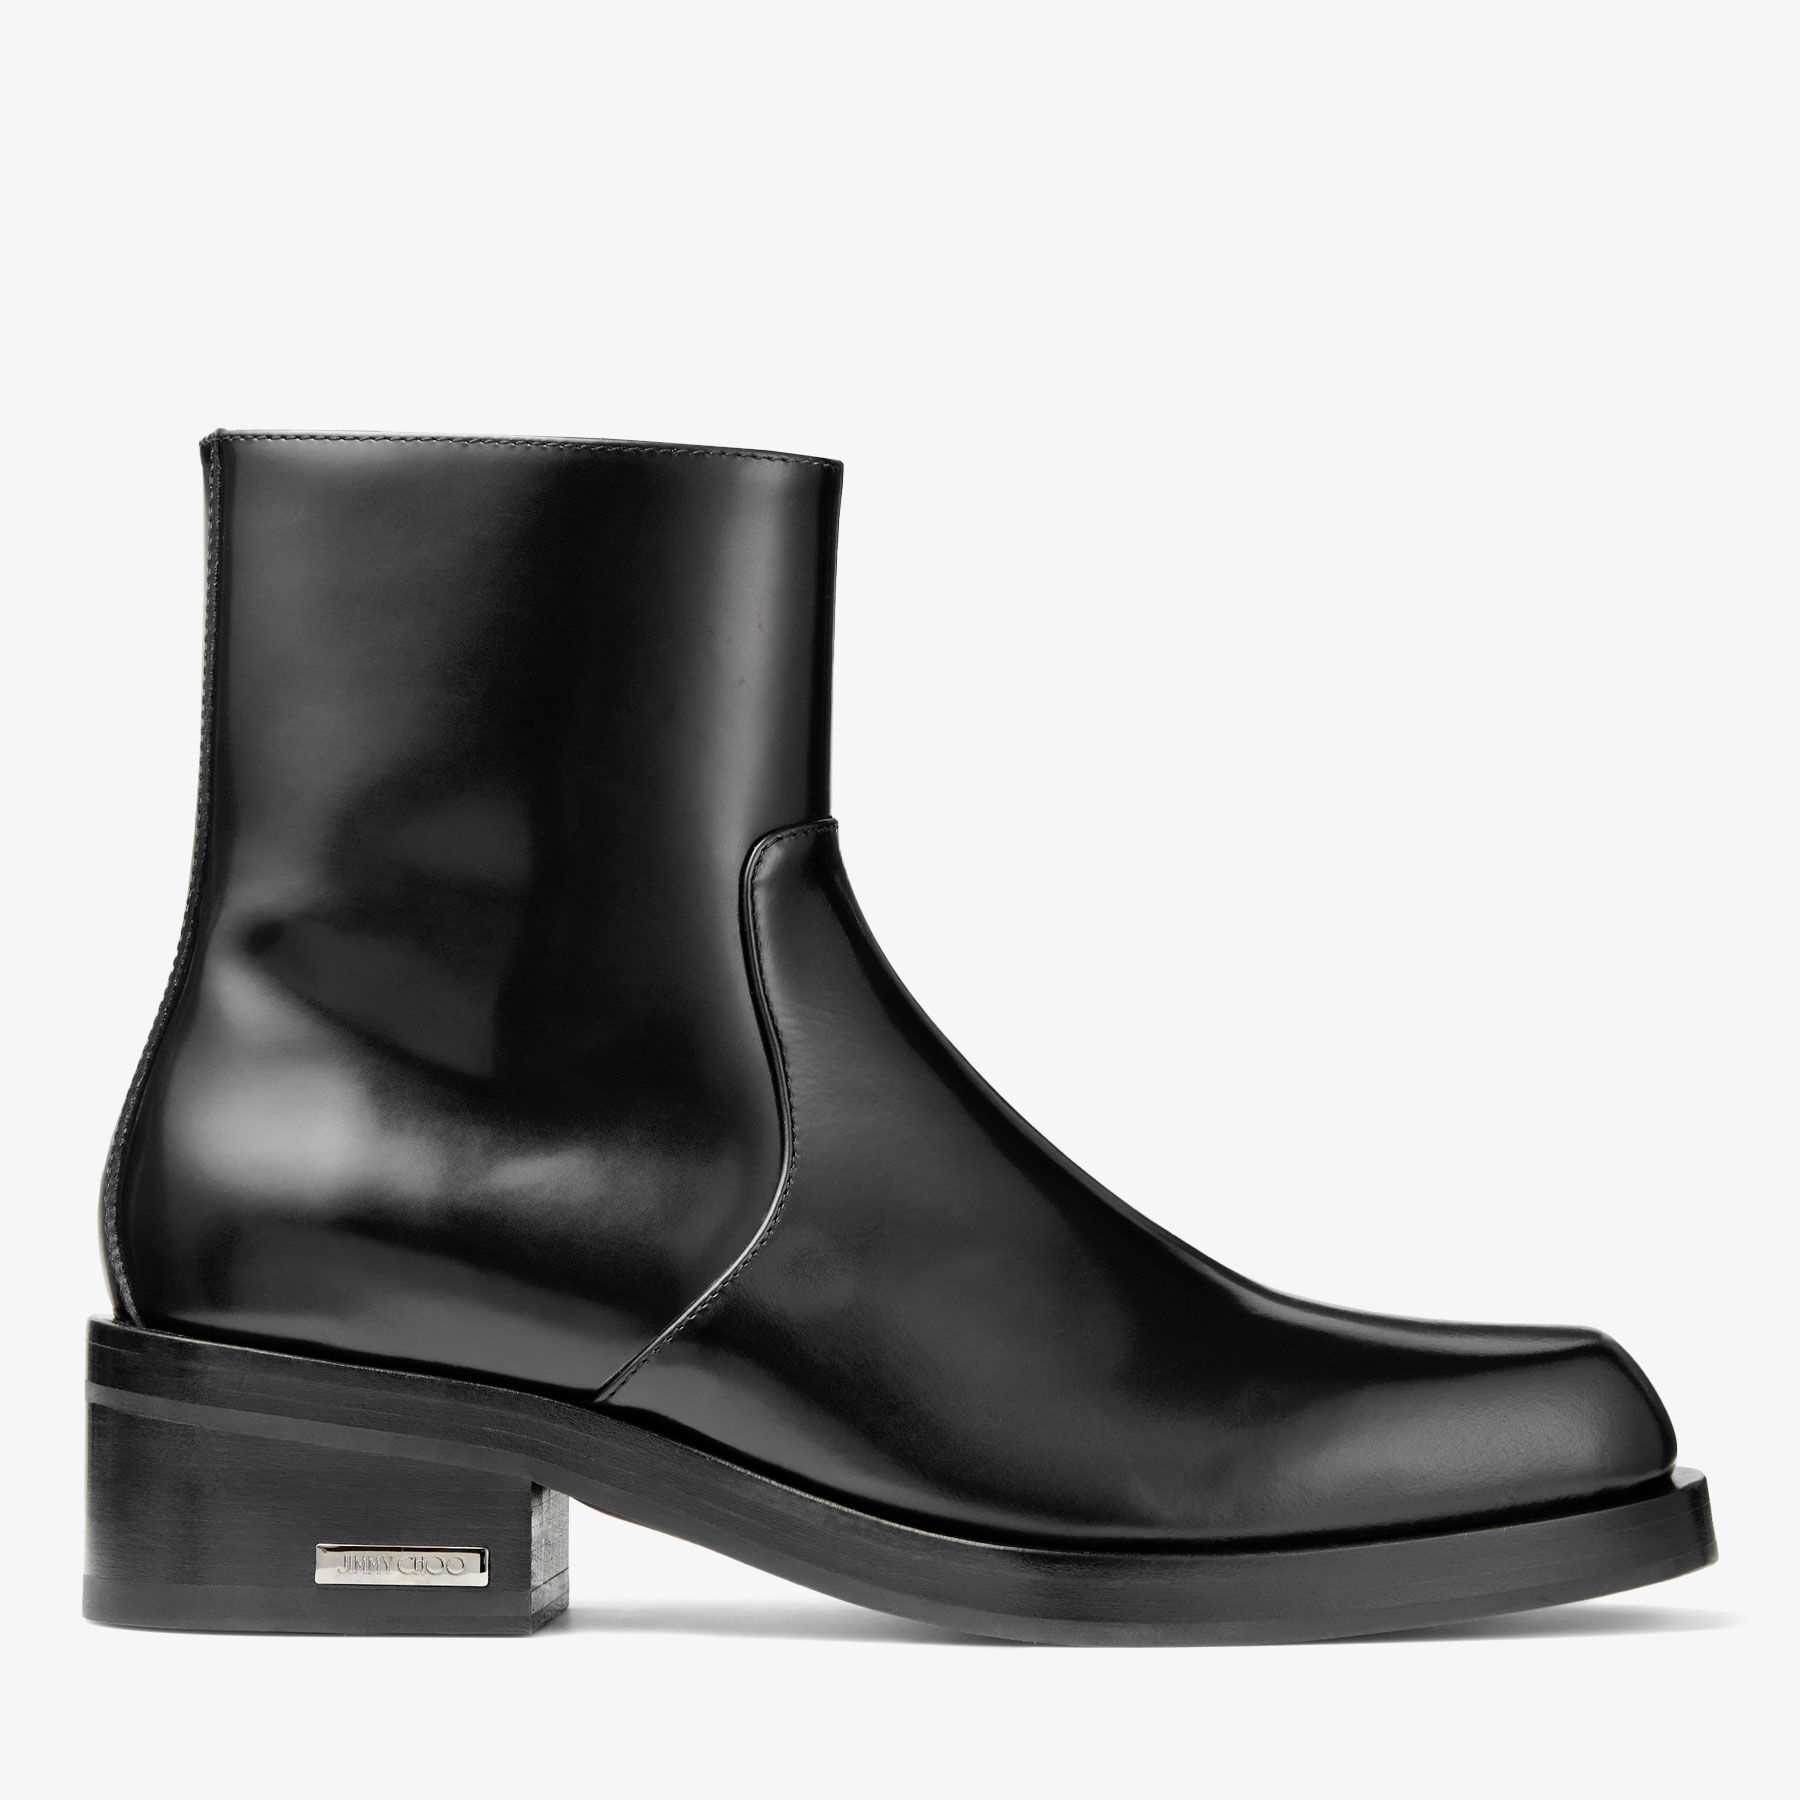 Elias Zip Boot
Black Calf Leather Zip Boots - 1